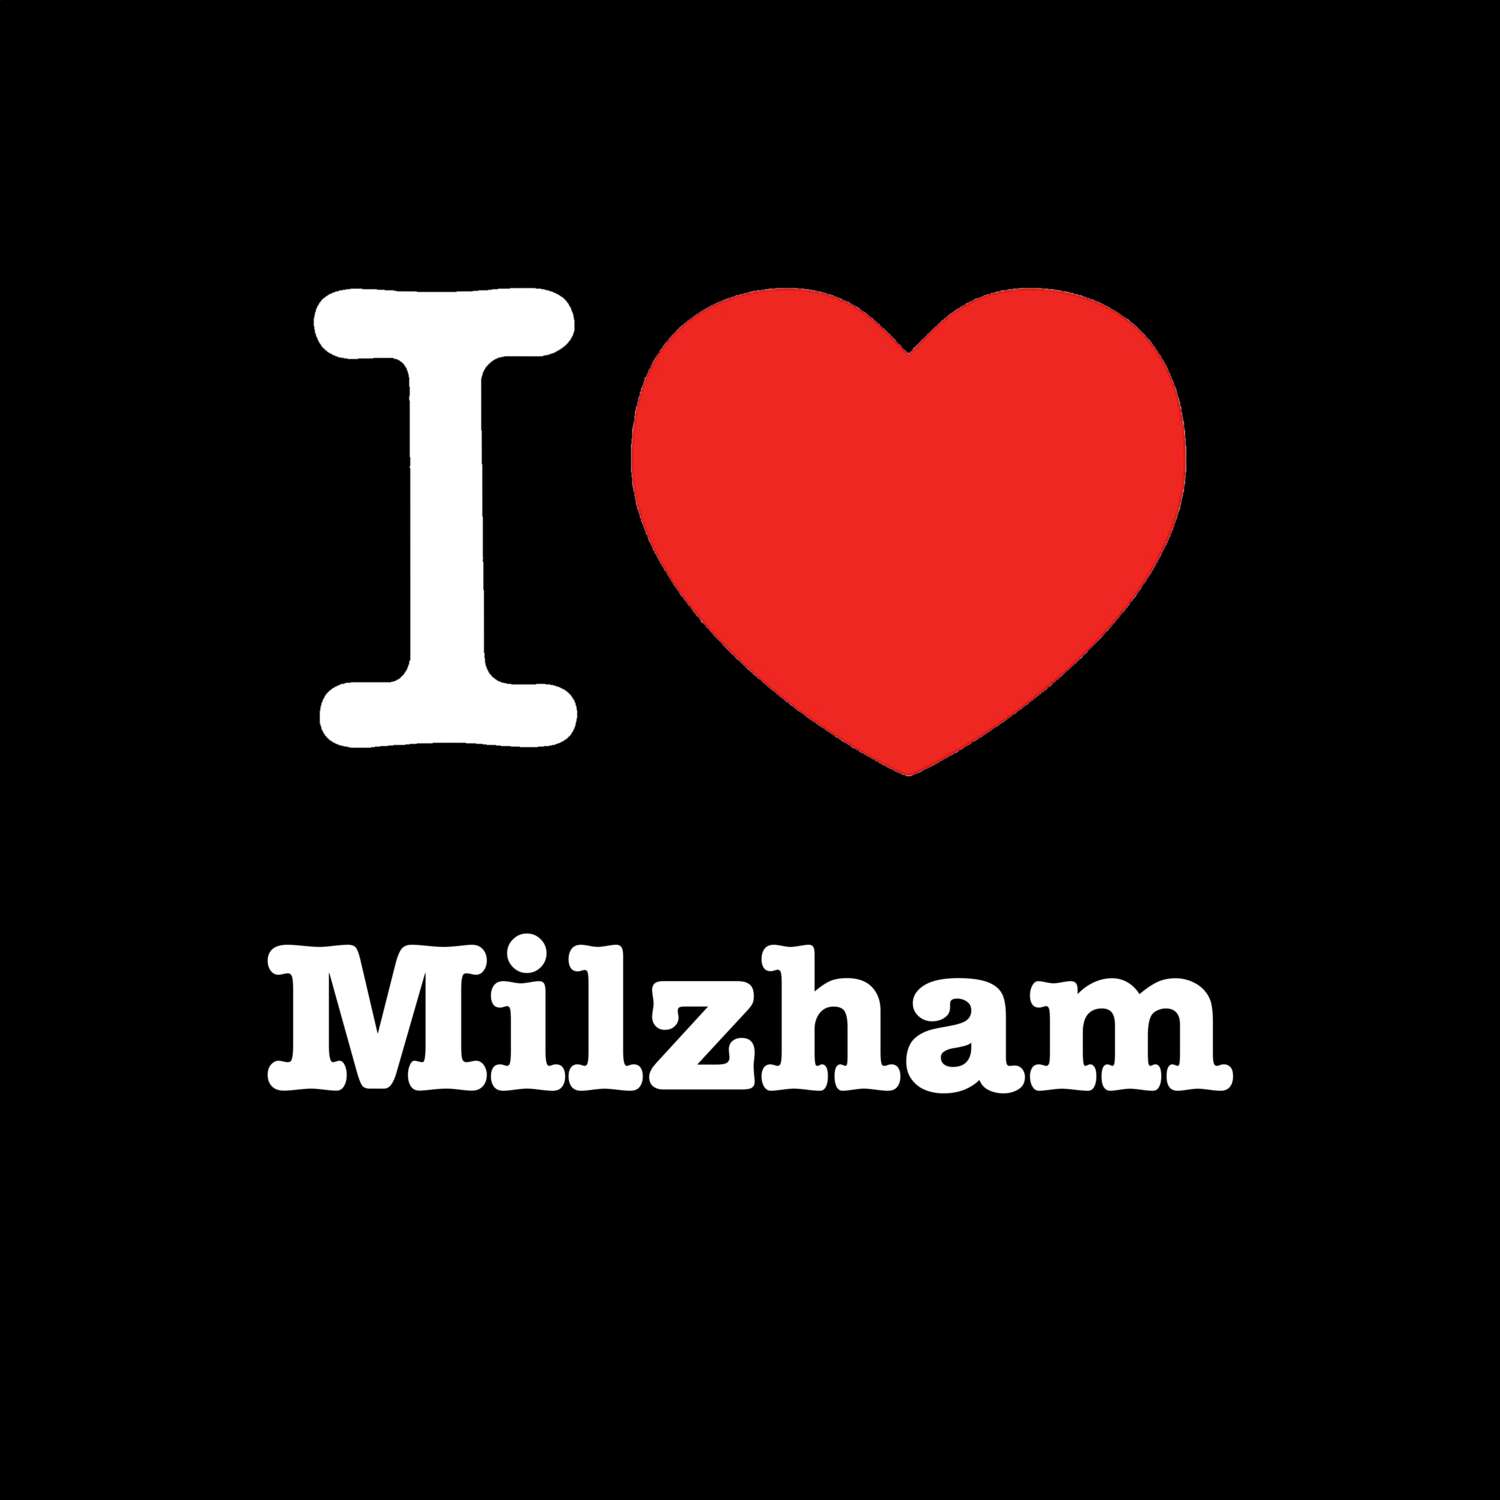 Milzham T-Shirt »I love«